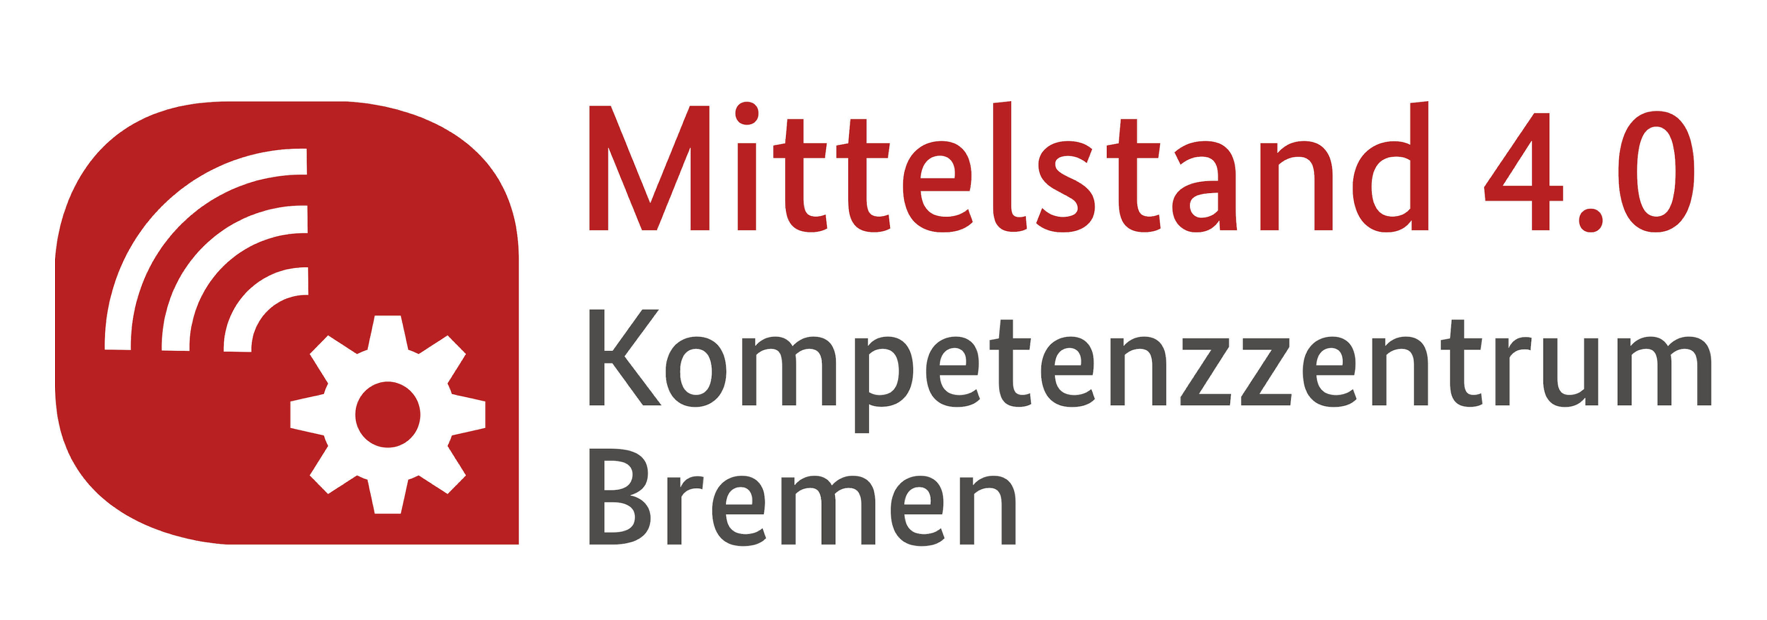 Mittelstand 4.0-Kompetenzzentrum Bremen